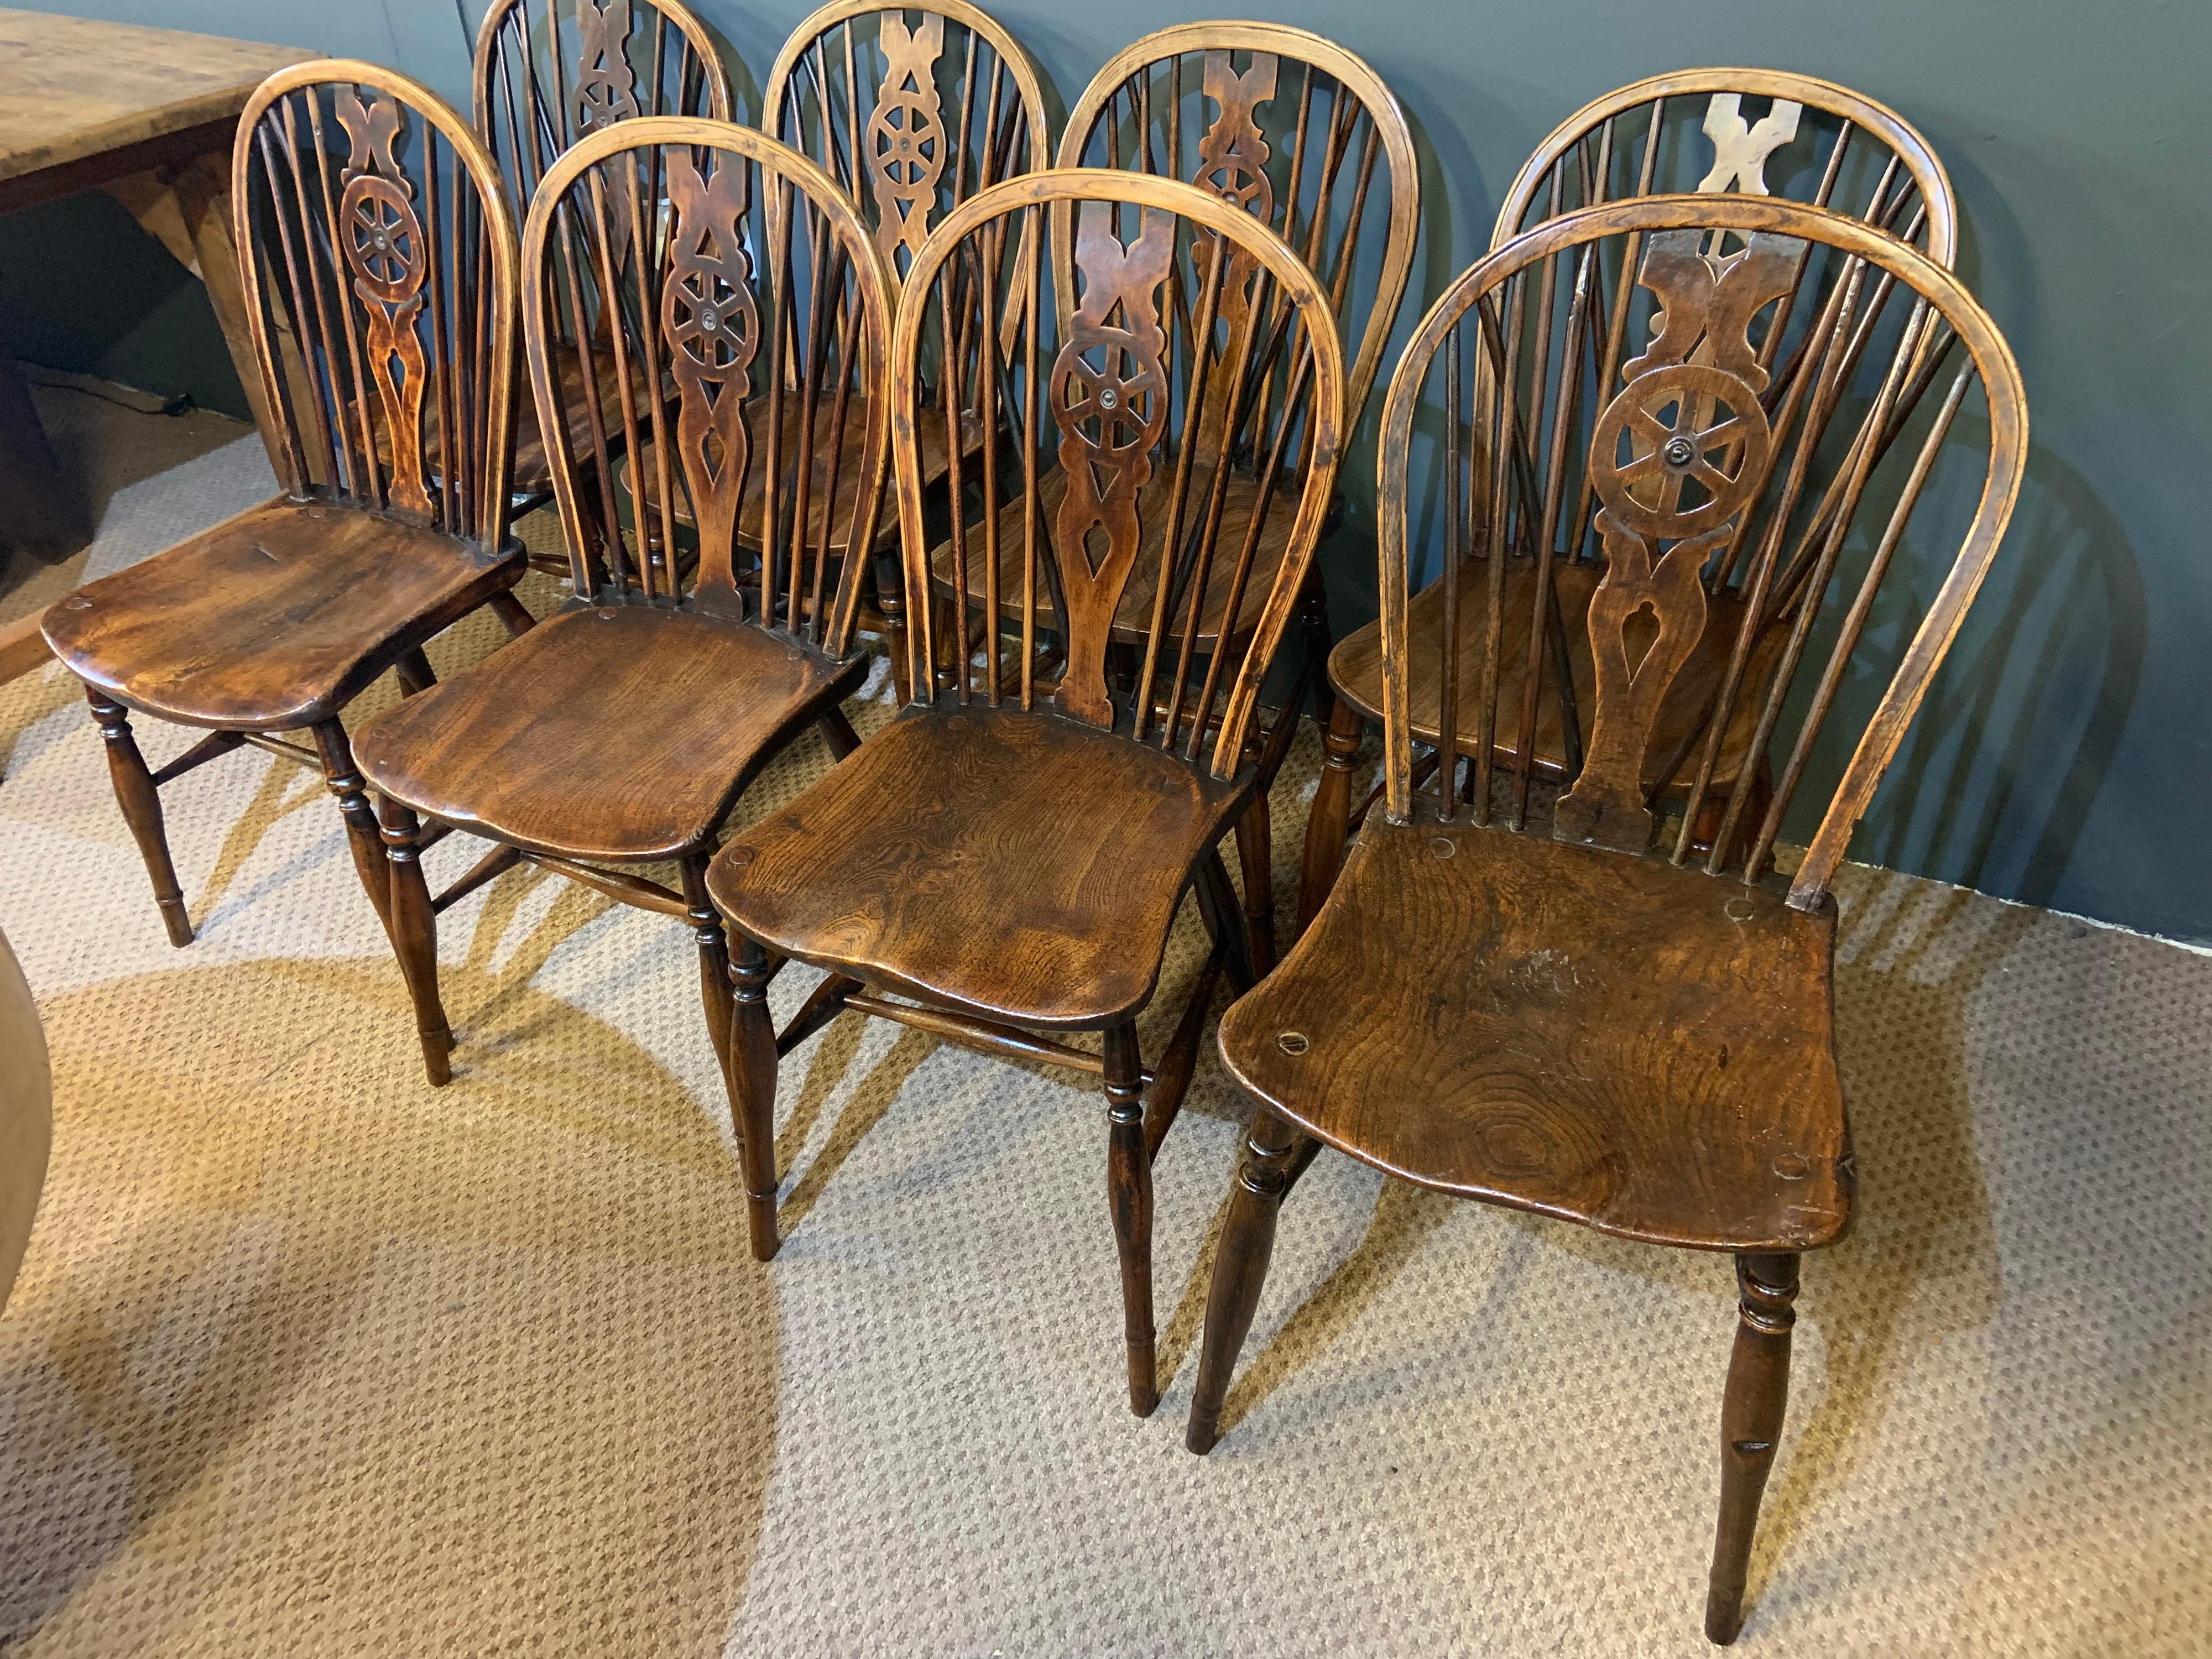 Ein Harlekin-Satz von acht Windsor-Radstühlen aus dem 18. Jahrhundert, vollständig restauriert. Schöne Patinierung und Farbe.